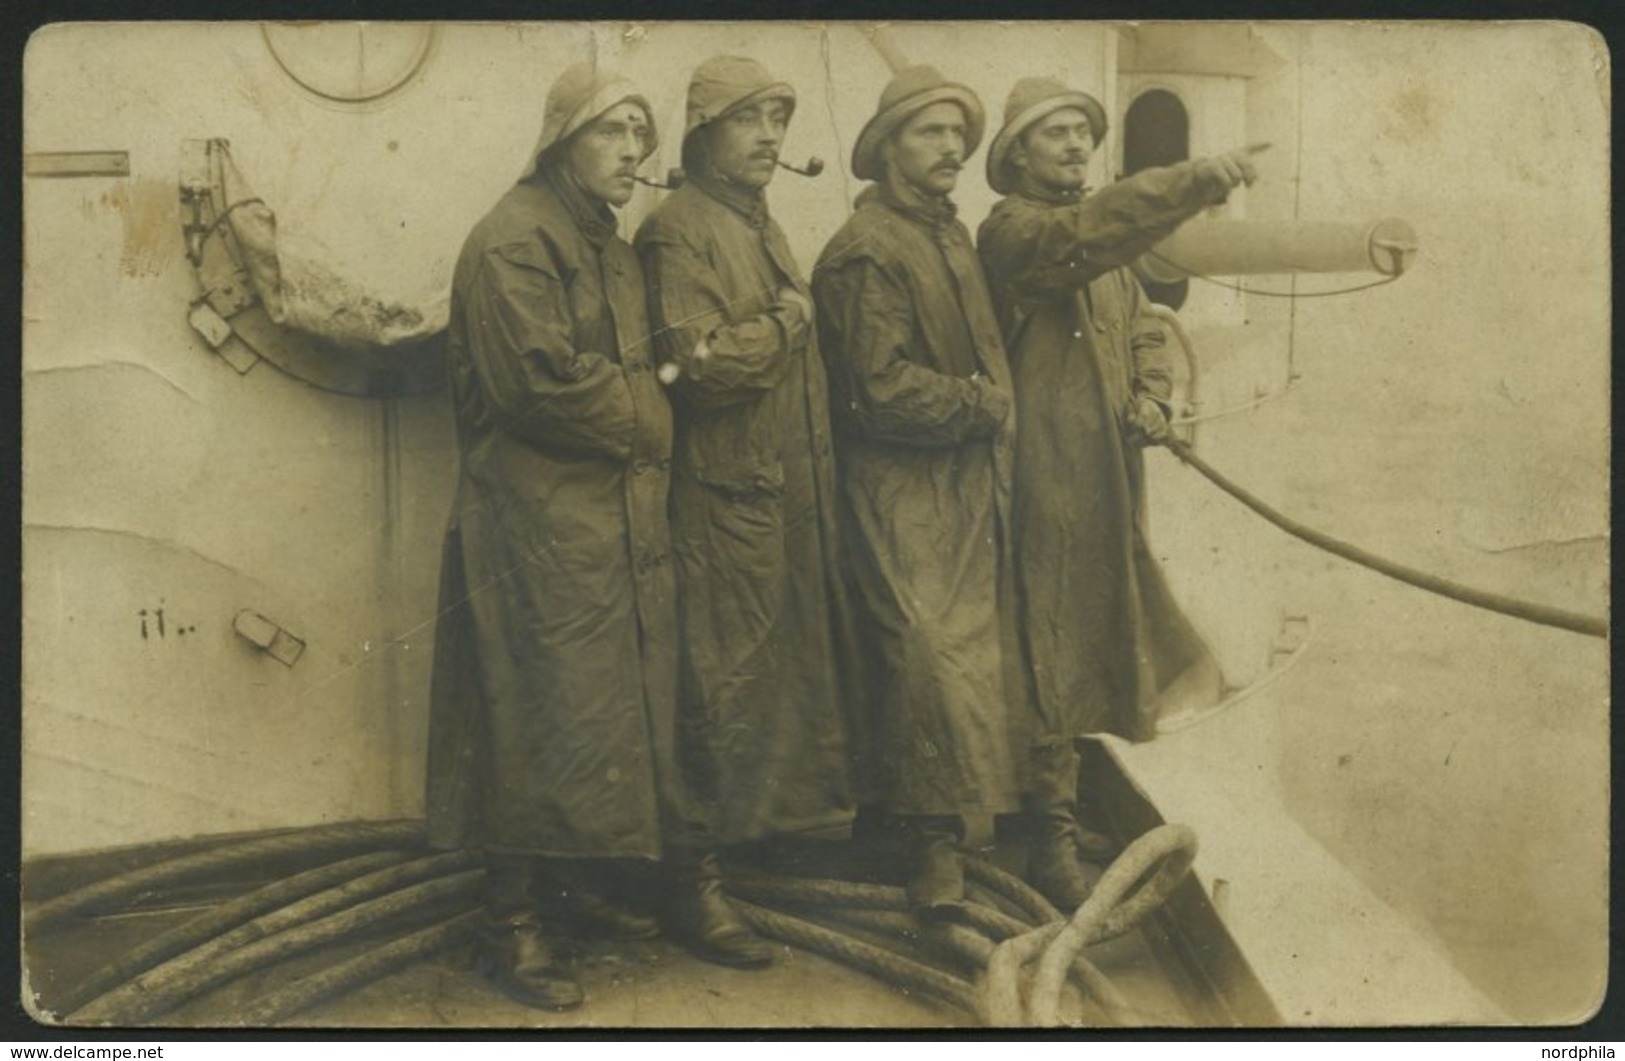 MSP VON 1914 - 1918 (Großer Kreuzer HANSA), 9.10.1914, Violetter Briefstempel, Feldpost-Ansichtskarte Von Bord Der Hansa - Marittimi